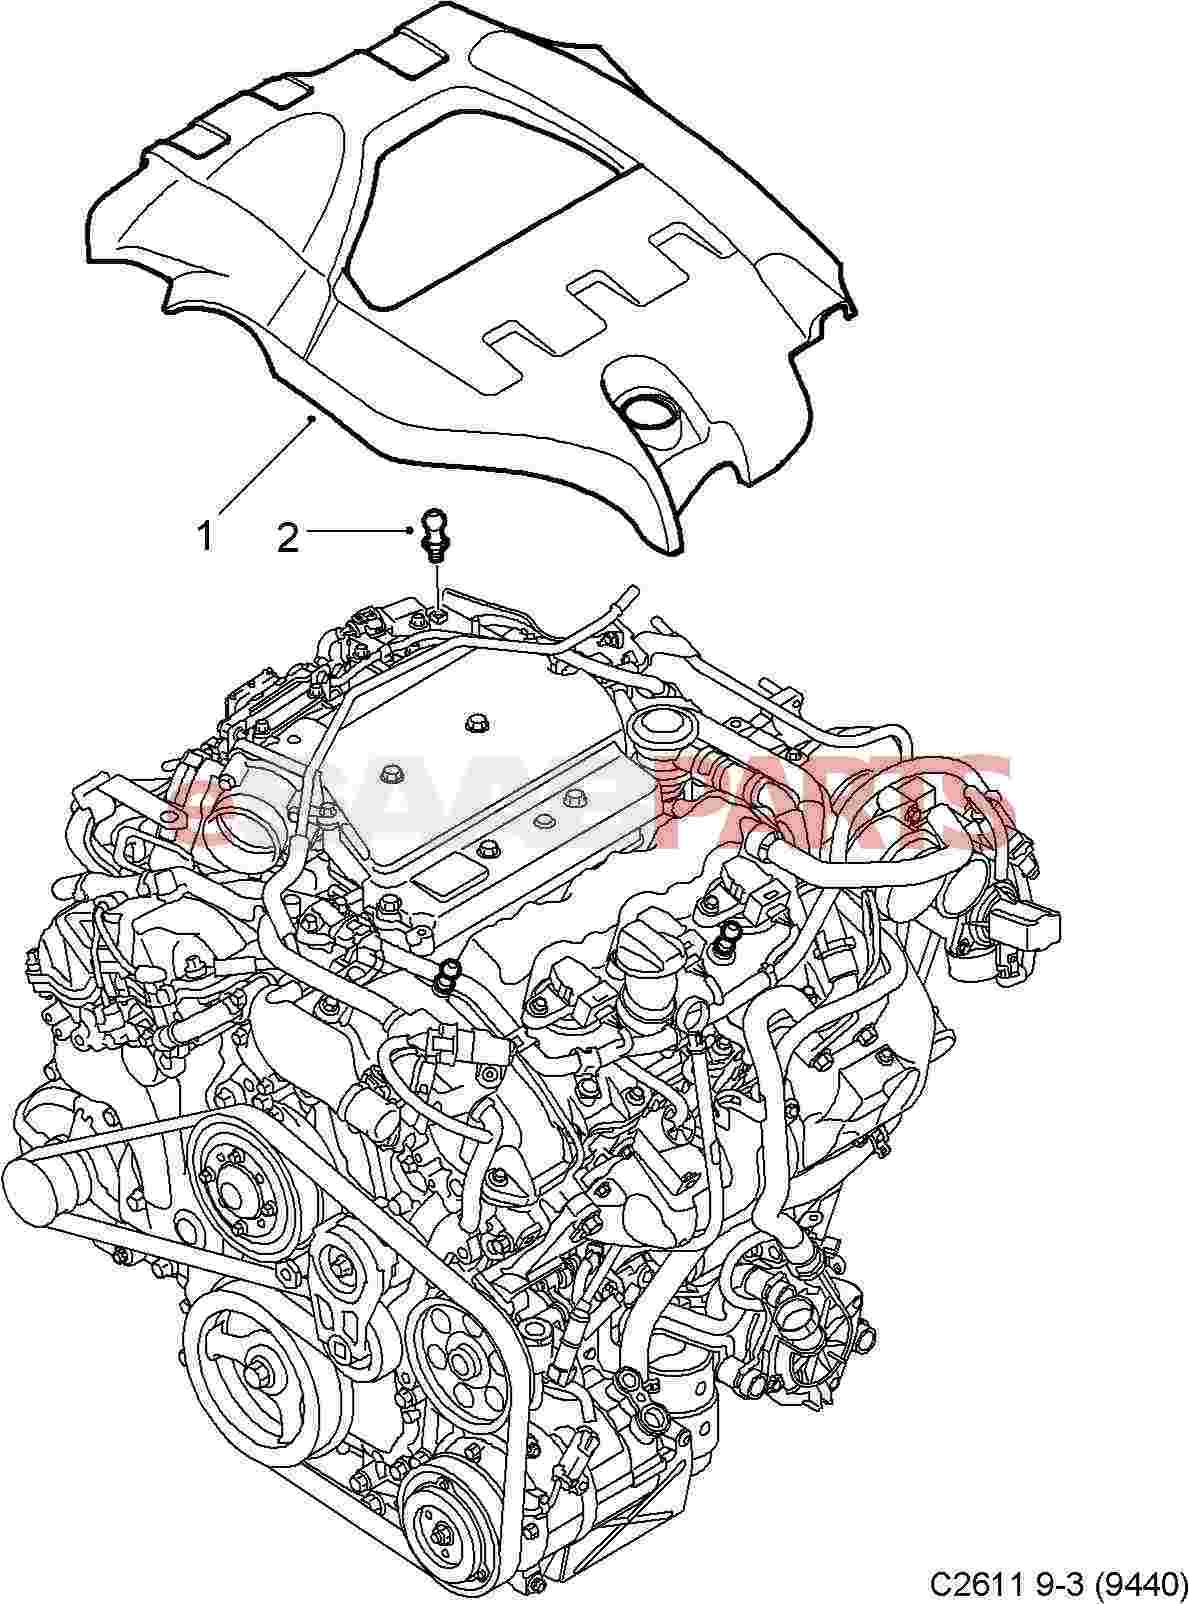 Saab 93 Engine Diagram - Complete Wiring Schemas